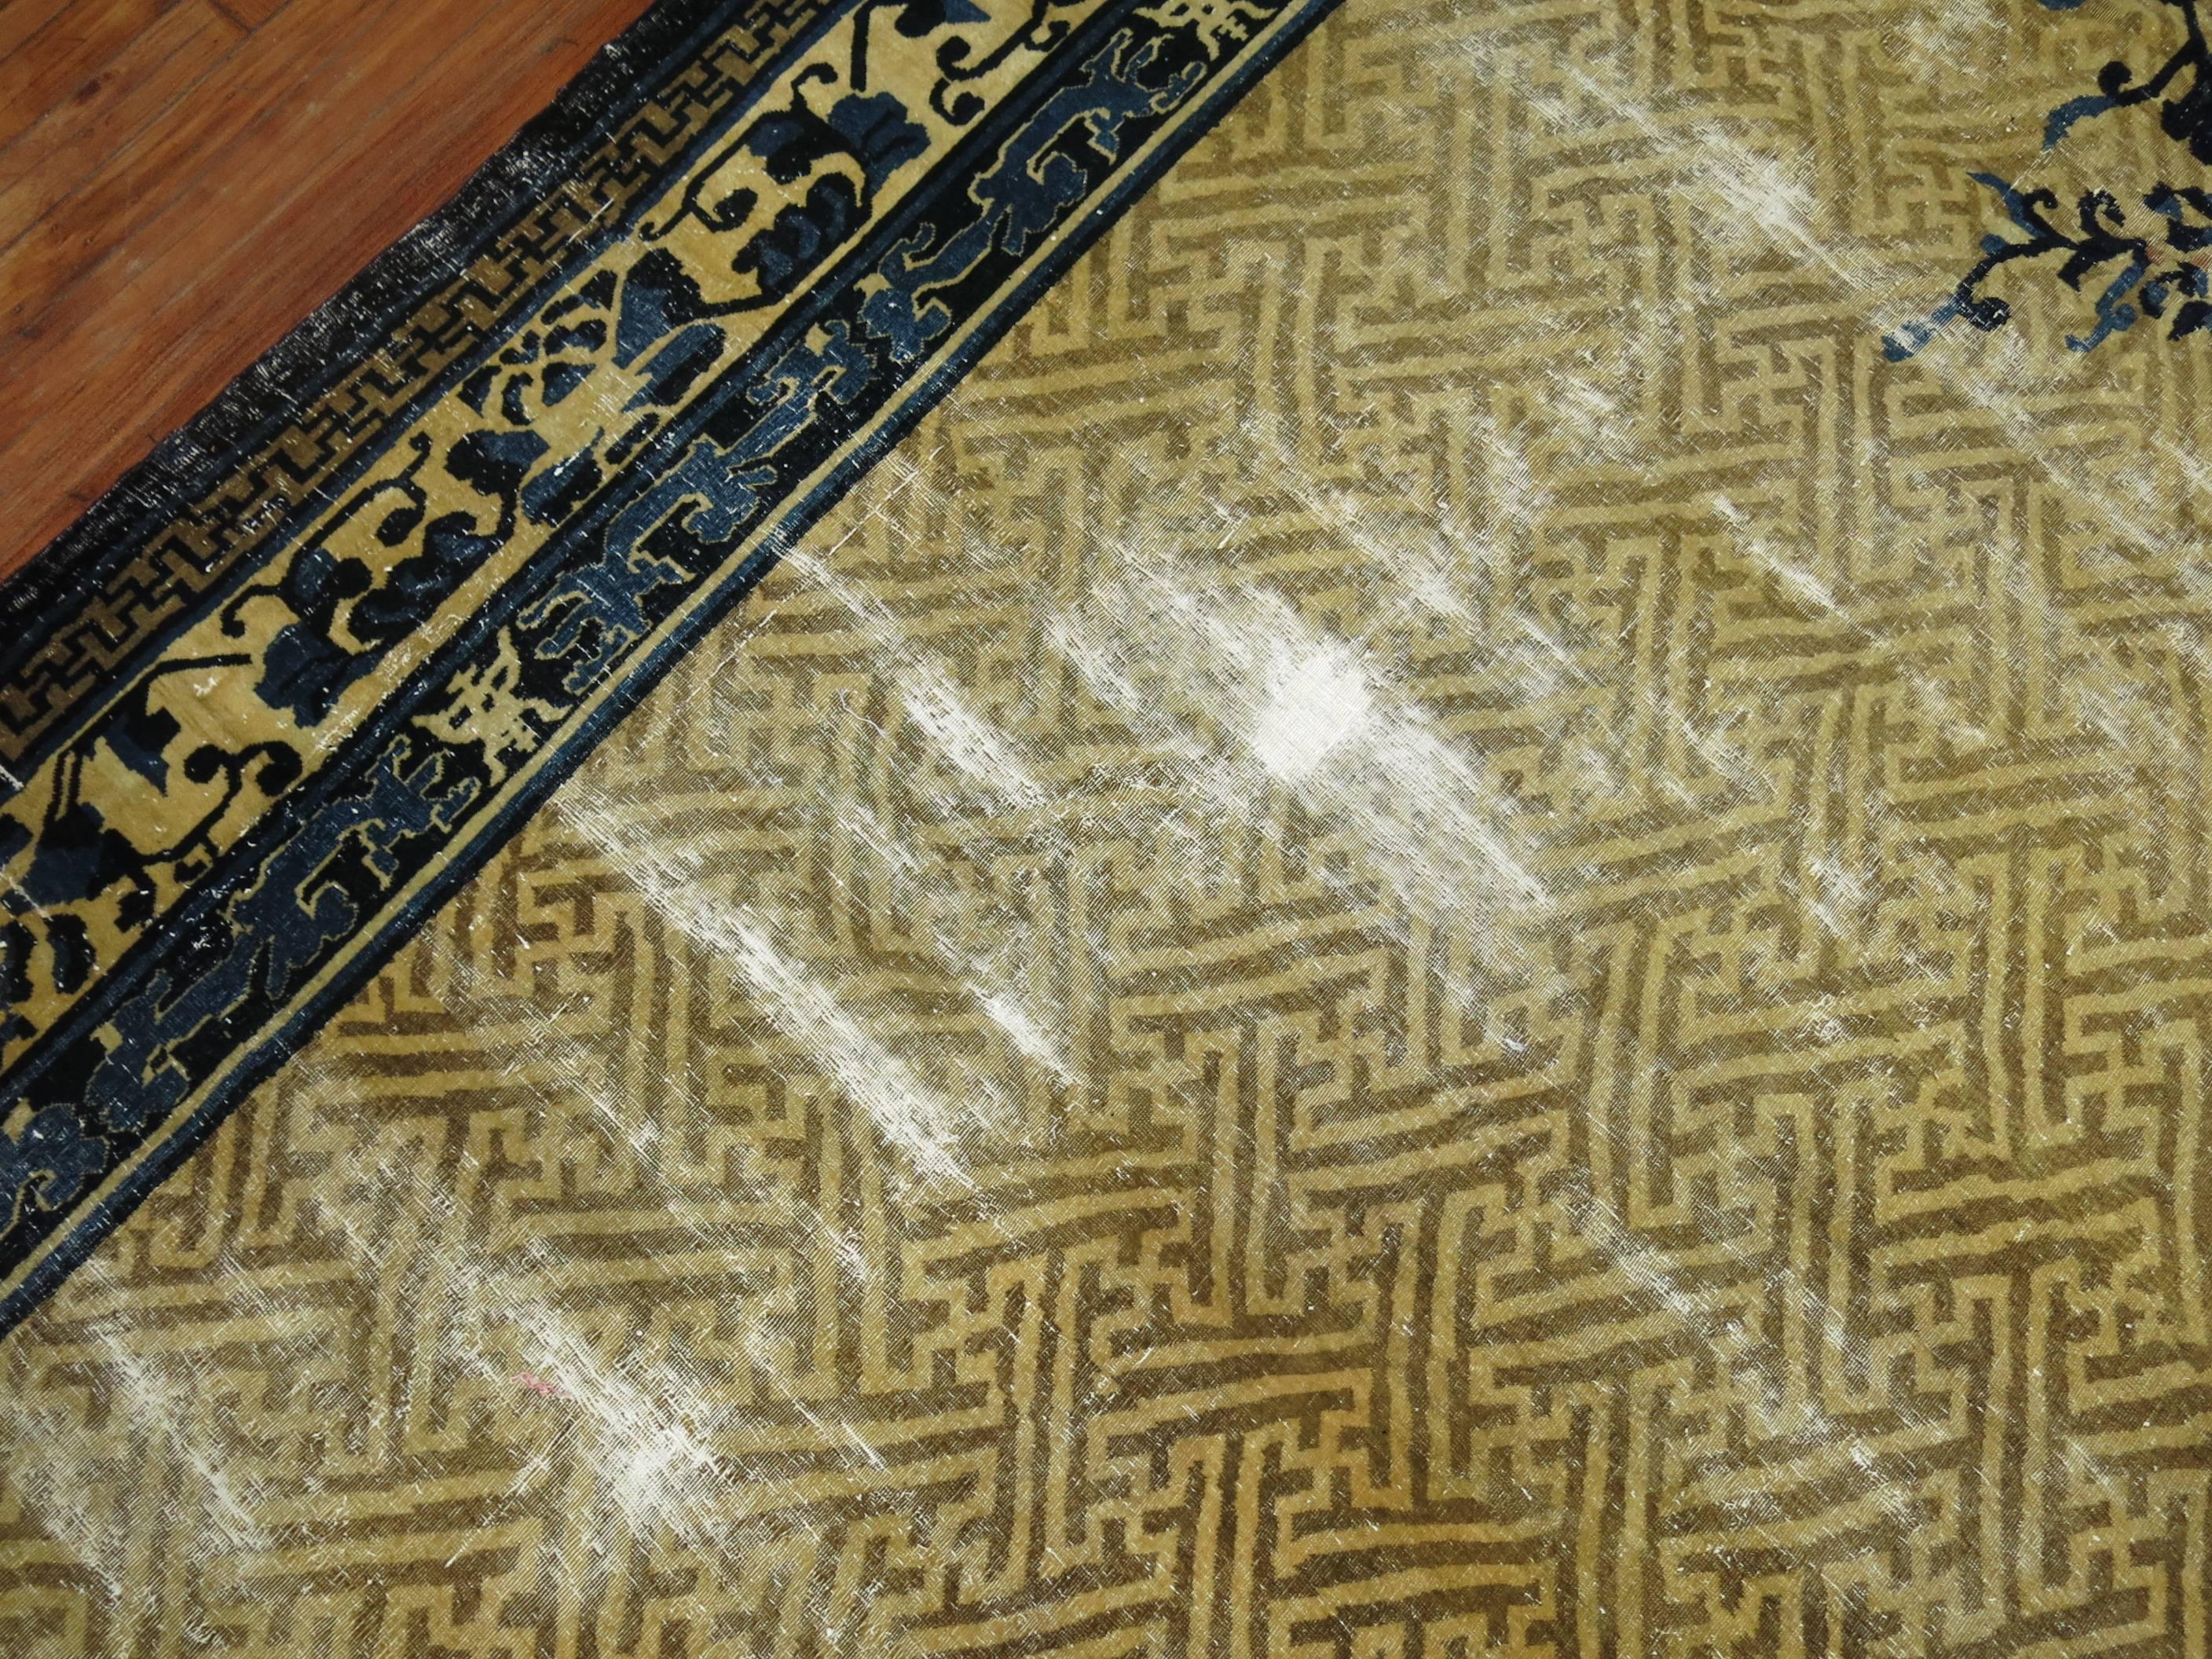 Un tapis chinois de Pékin surdimensionné dans les tons tans et bleus.

Les tapis pékinois présentent des motifs plus simples et asymétriques, qui tendent souvent vers le goût moderne de l'art déco occidental.